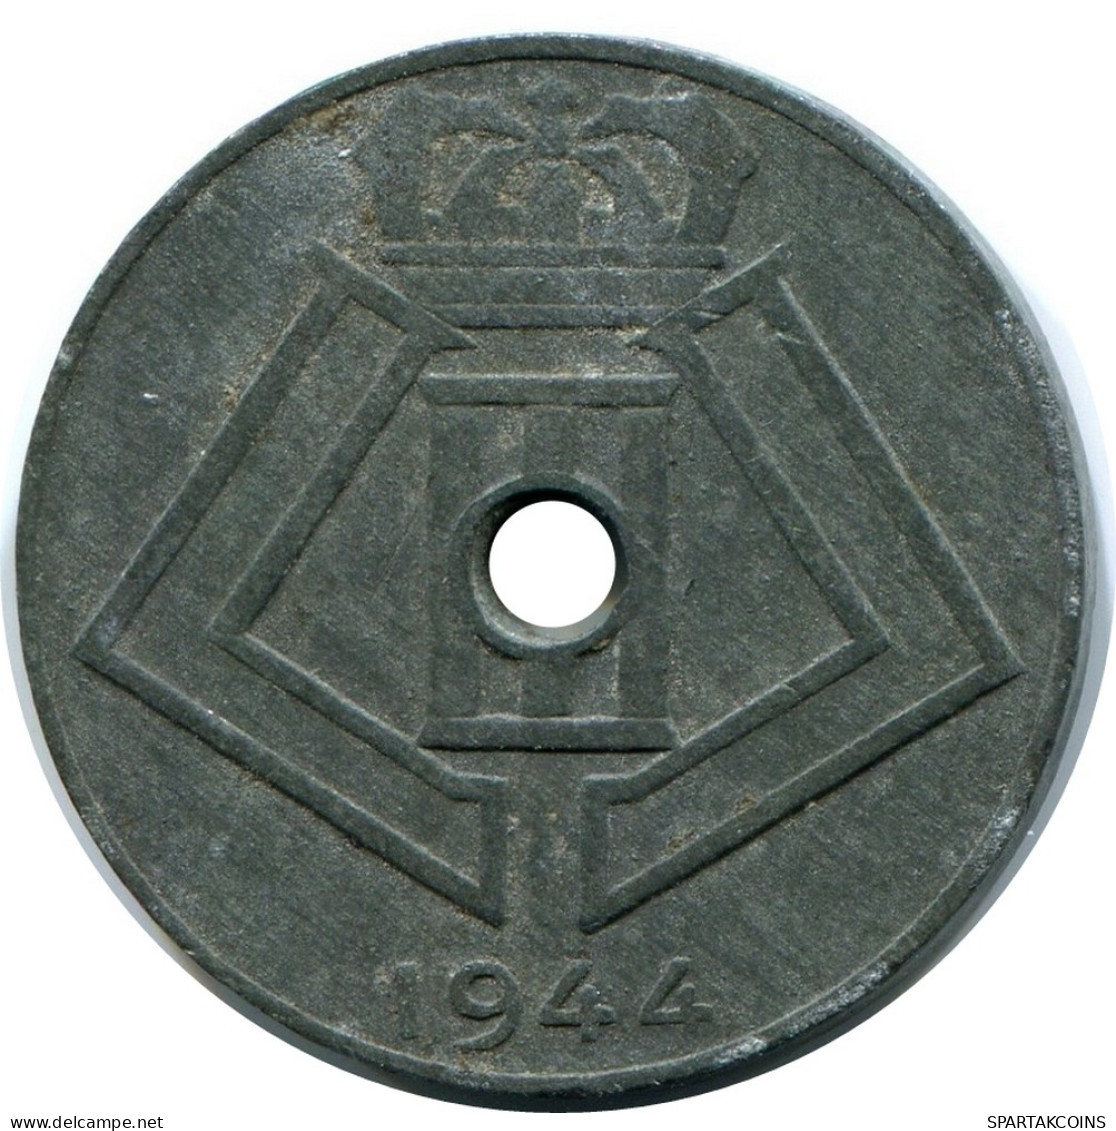 10 CENTIMES 1944 BELGIQUE BELGIUM Pièce BELGIE-BELGIQUE #AX366.F - 10 Centimes & 25 Centimes